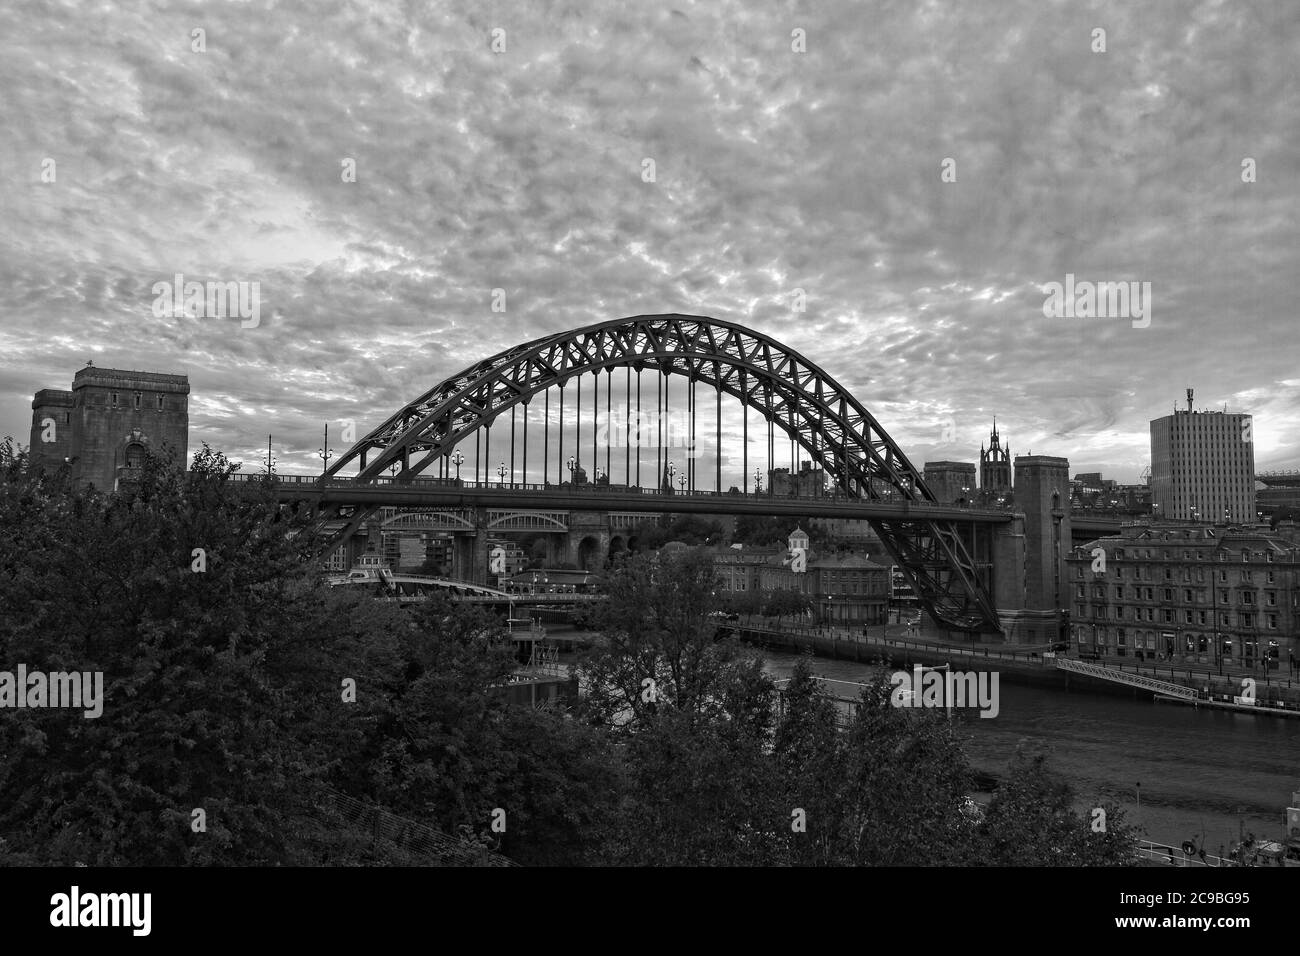 Der ikonische Bogen der Tyne Bridge und Kai in Newcastle, Tyne und tragen bei Sonnenuntergang von der Gateshead Seite des Flusses Tyne aufgenommen. Stockfoto